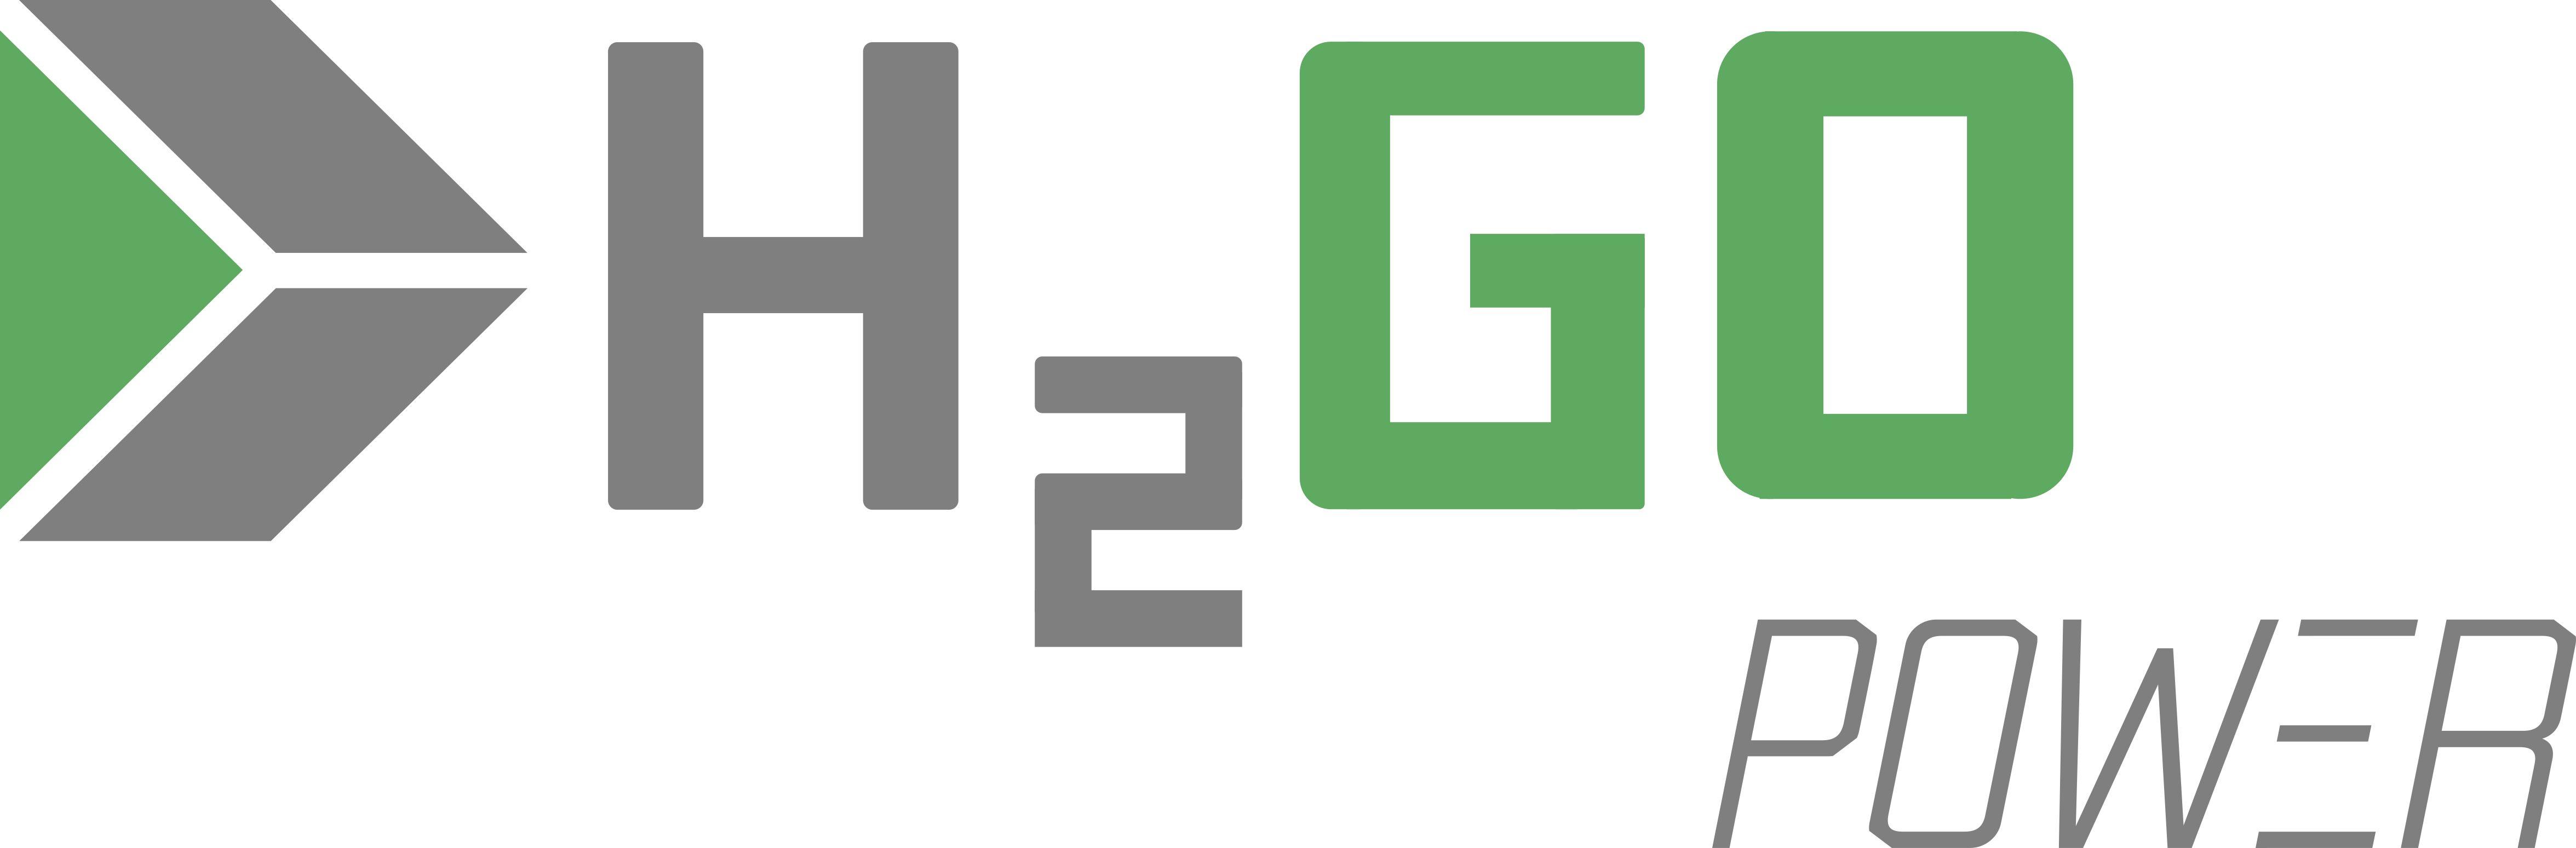 H2GO Power logo 300dpi